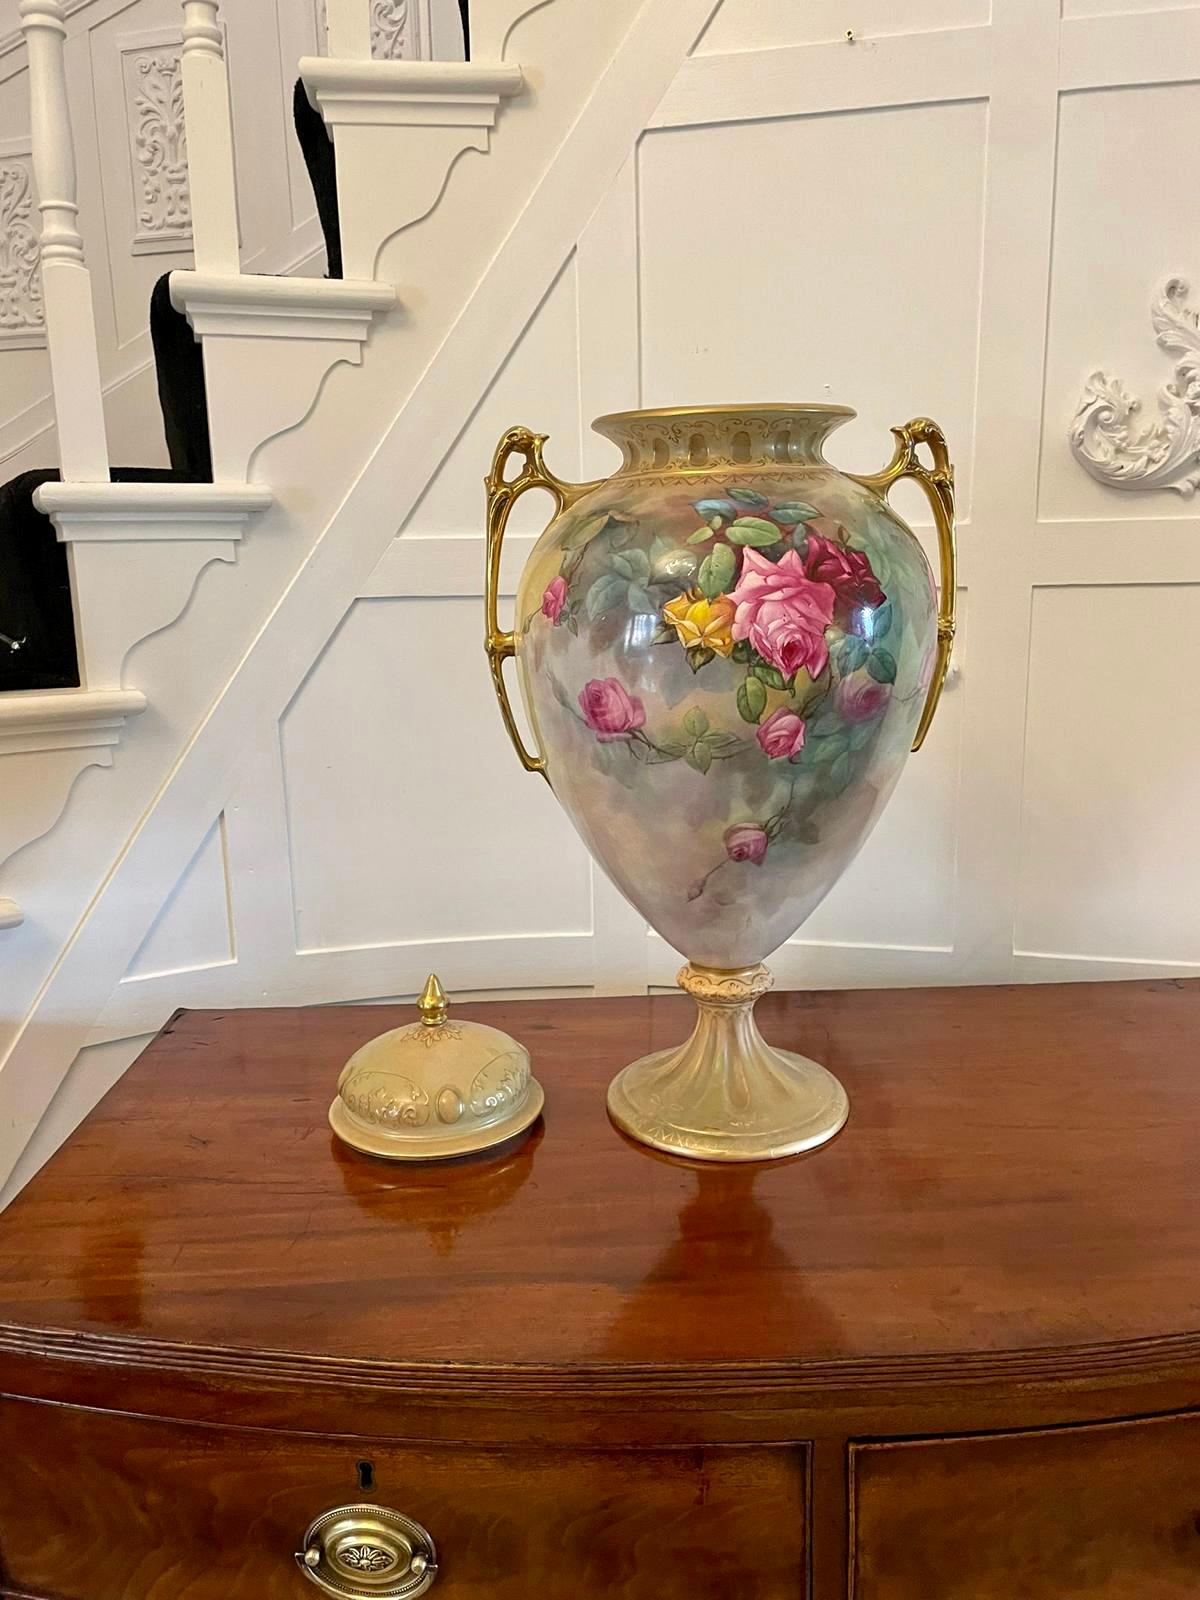 Grand vase à couvercle de qualité Royal Crown Devon de l'époque victorienne avec de magnifiques fleurs peintes à la main dans de superbes couleurs rouge, vert, bleu et blanc.  couleurs jaunes avec poignées en forme dorées 

En merveilleux état